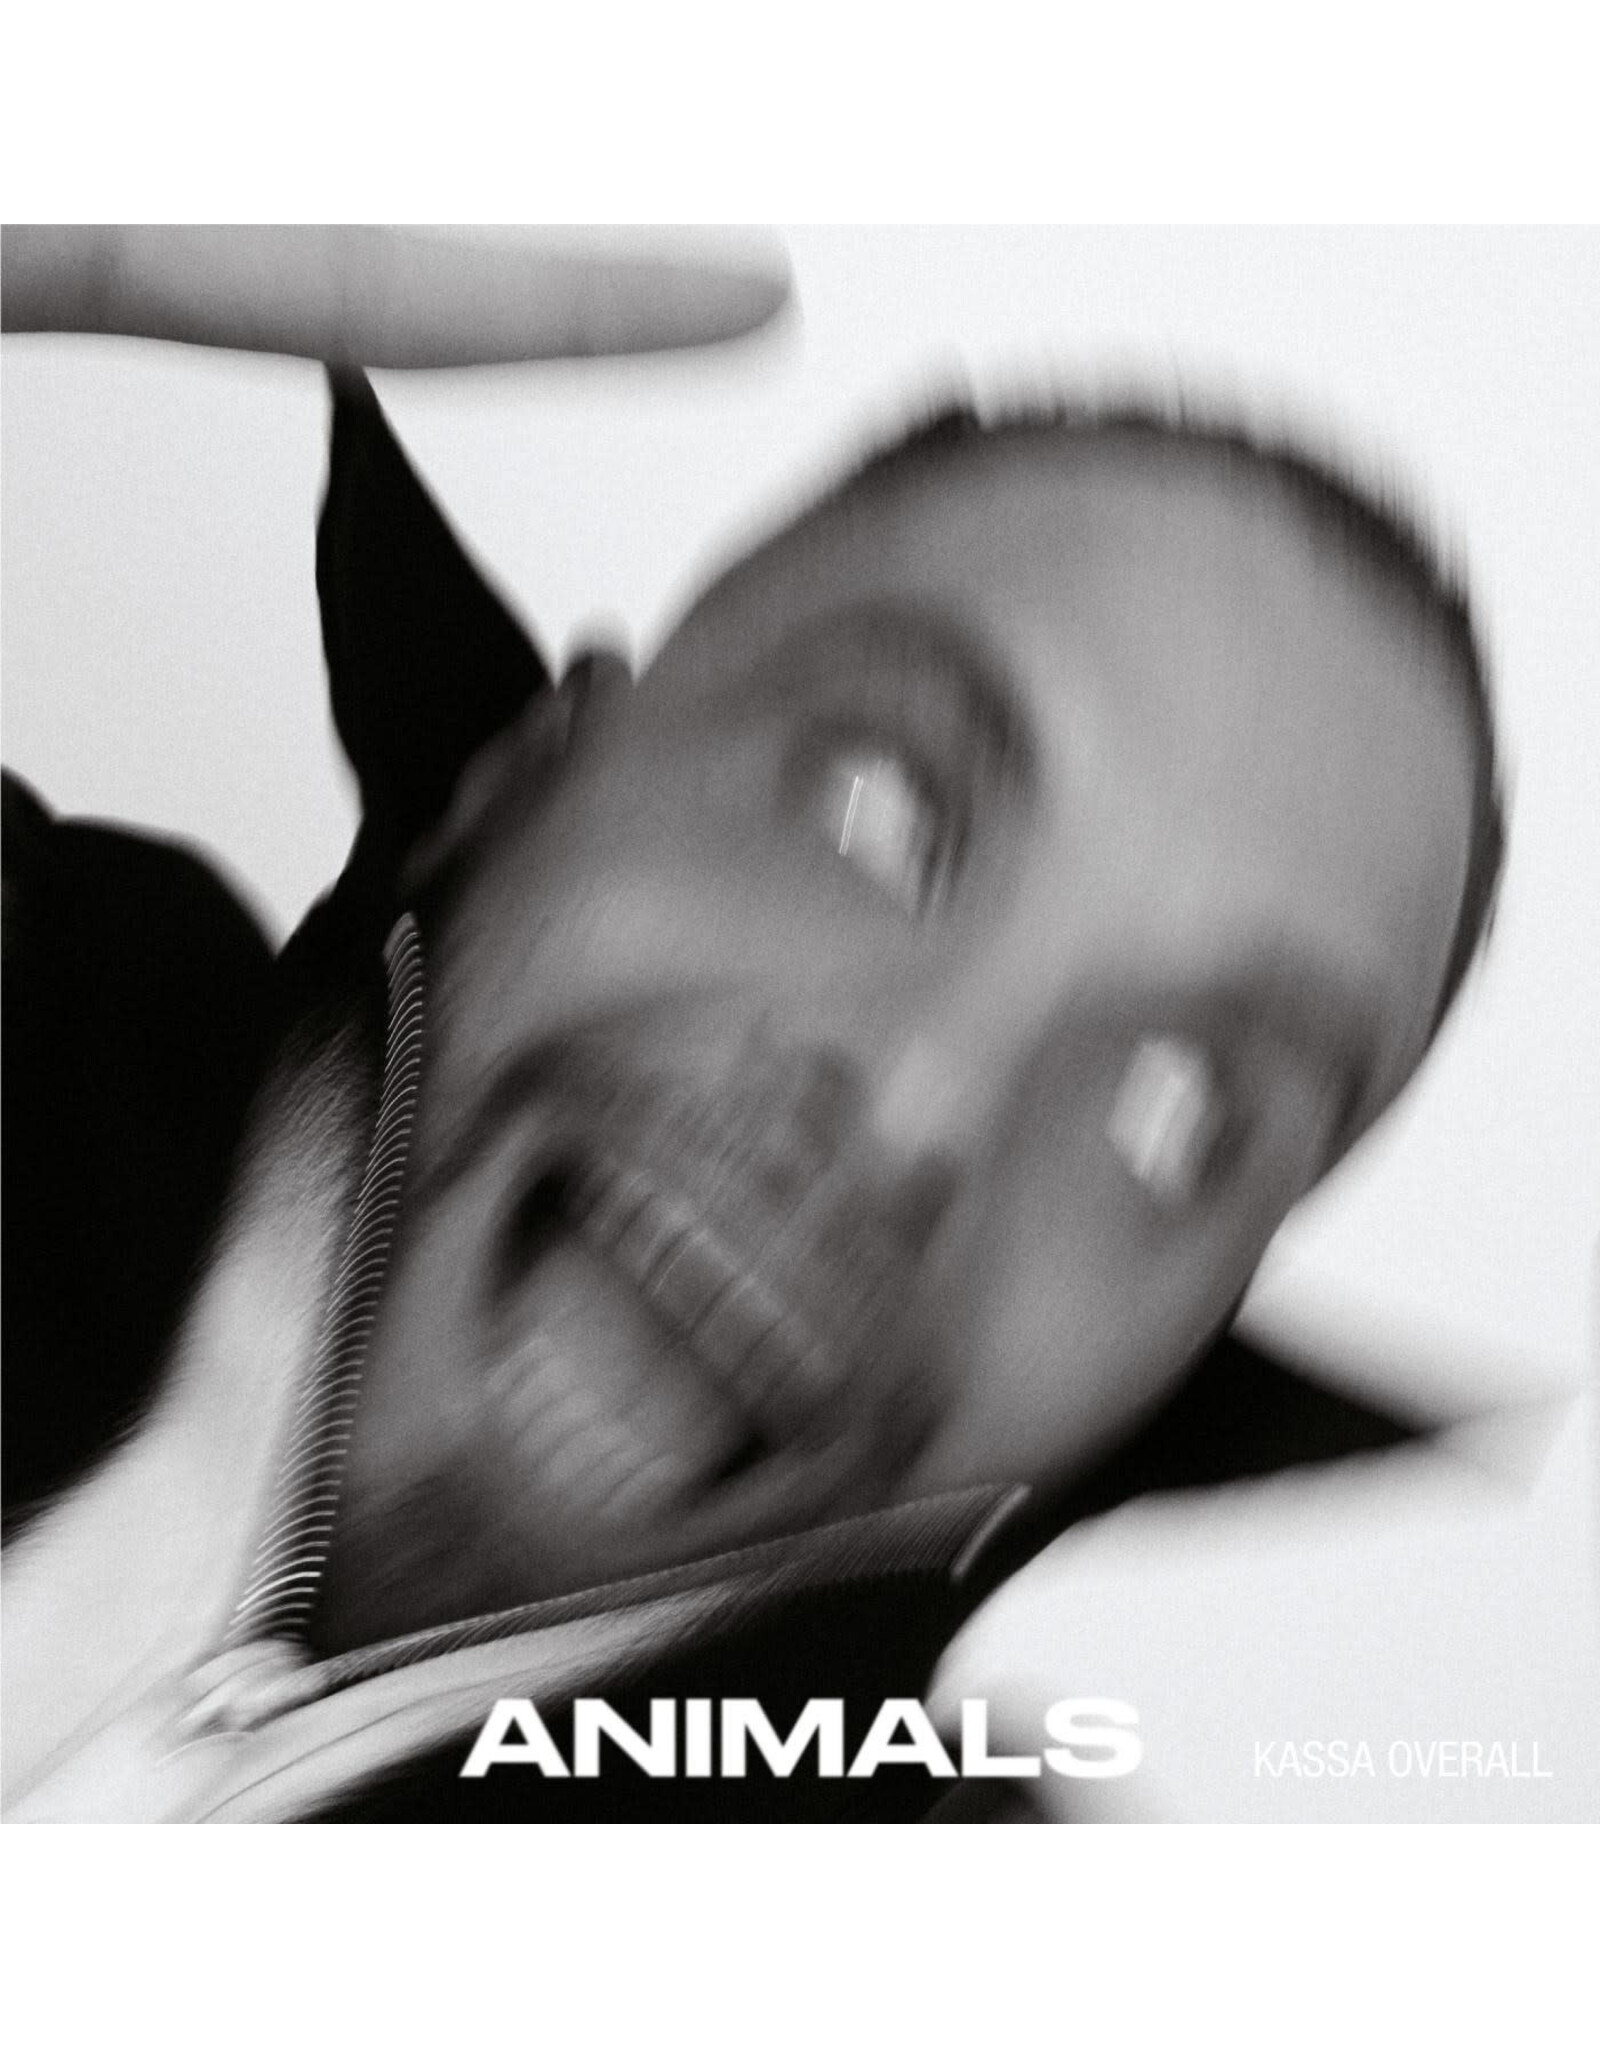 Warp Overall, Kassa: ANIMALS (CLEAR) LP